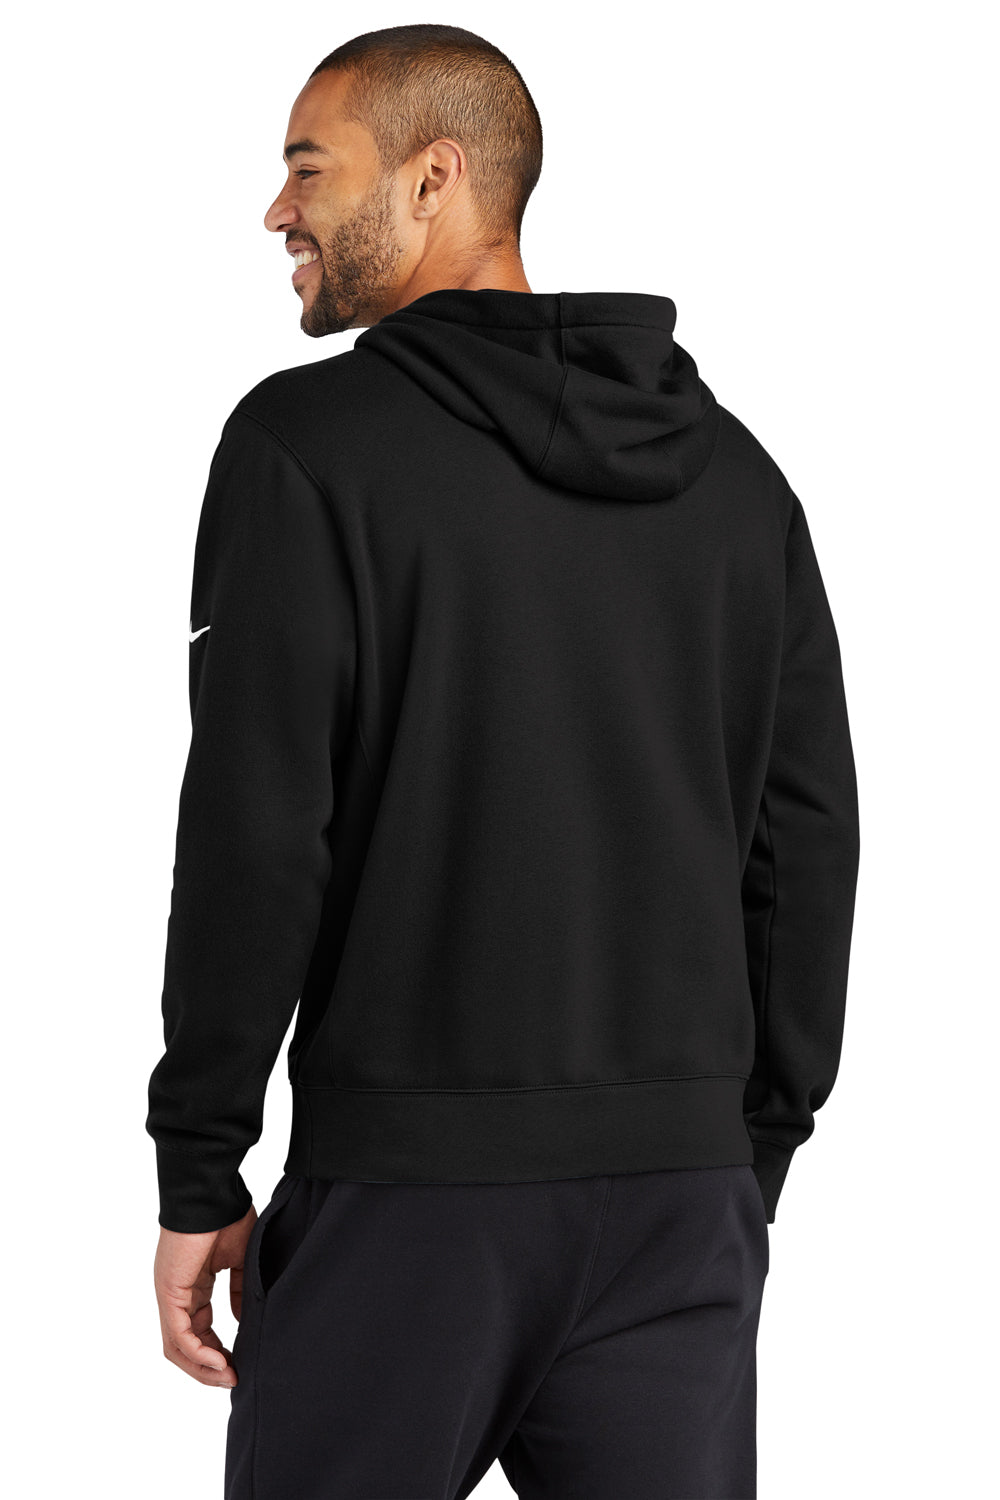 Nike NKDR1499 Mens Club Fleece Hooded Sweatshirt Hoodie Black Model Back